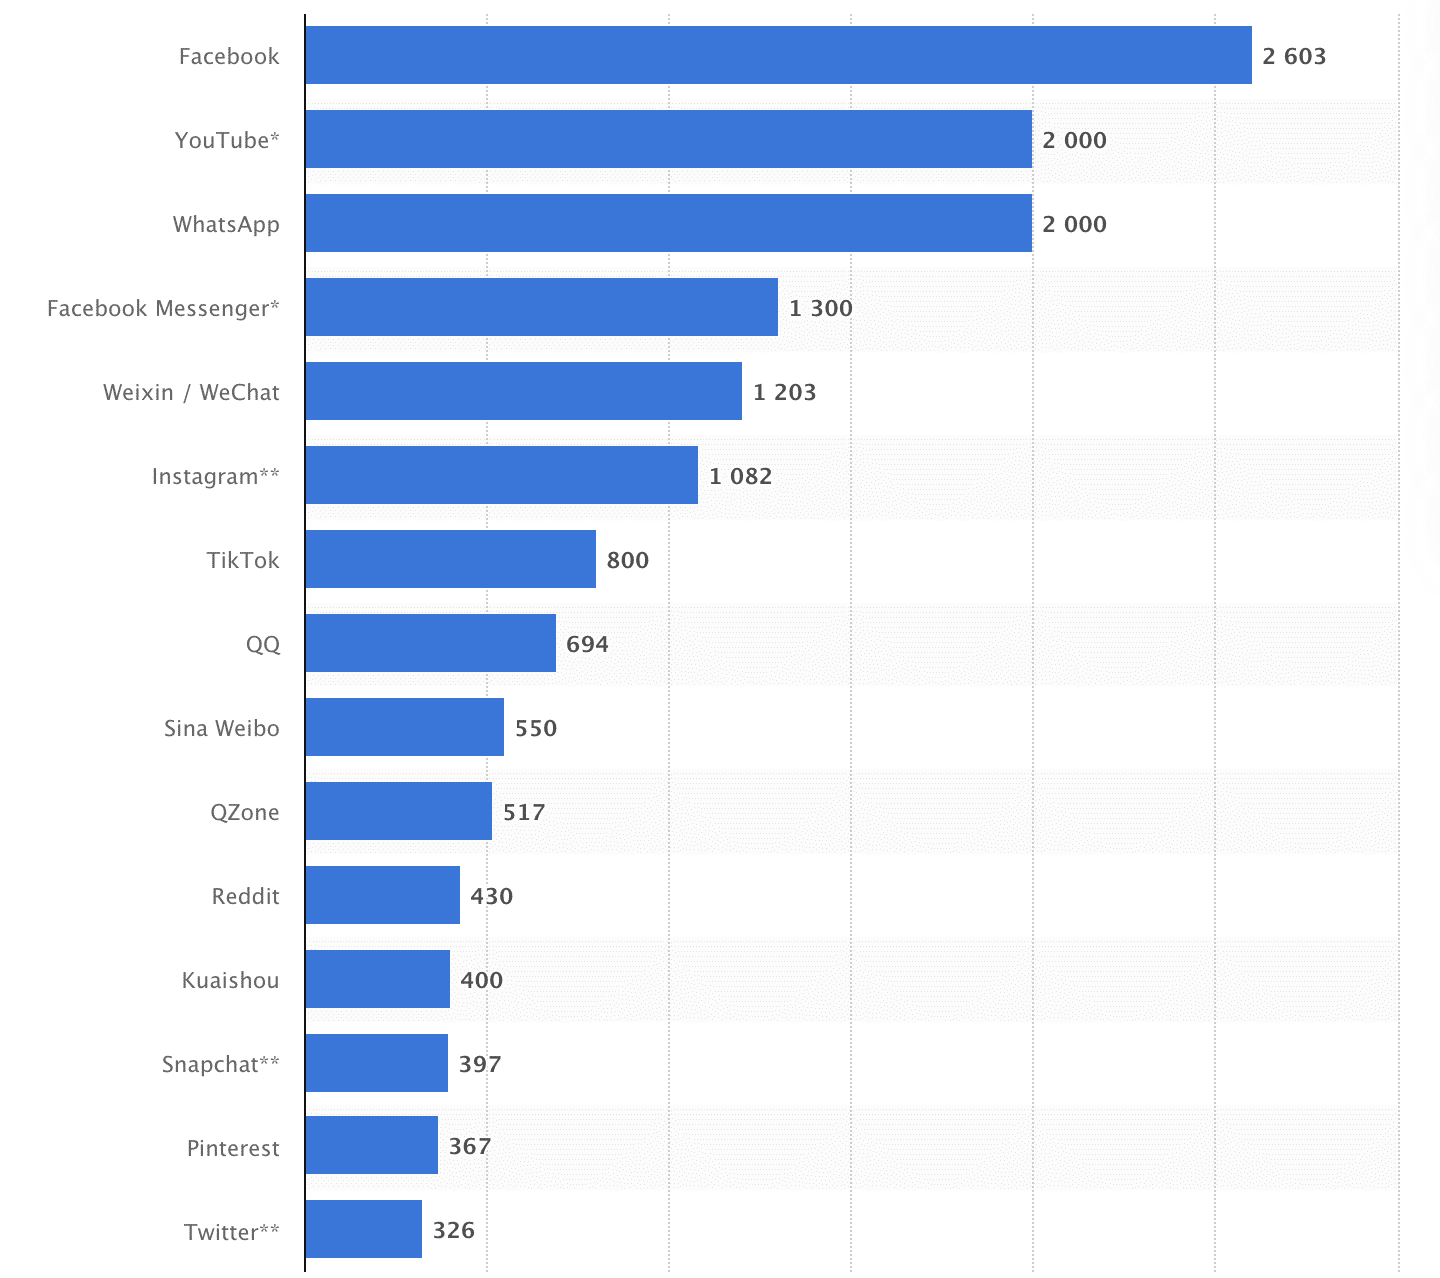 Statista Snapchat weltweit auf Platz 13 der beliebtesten Social-Media-Plattformen